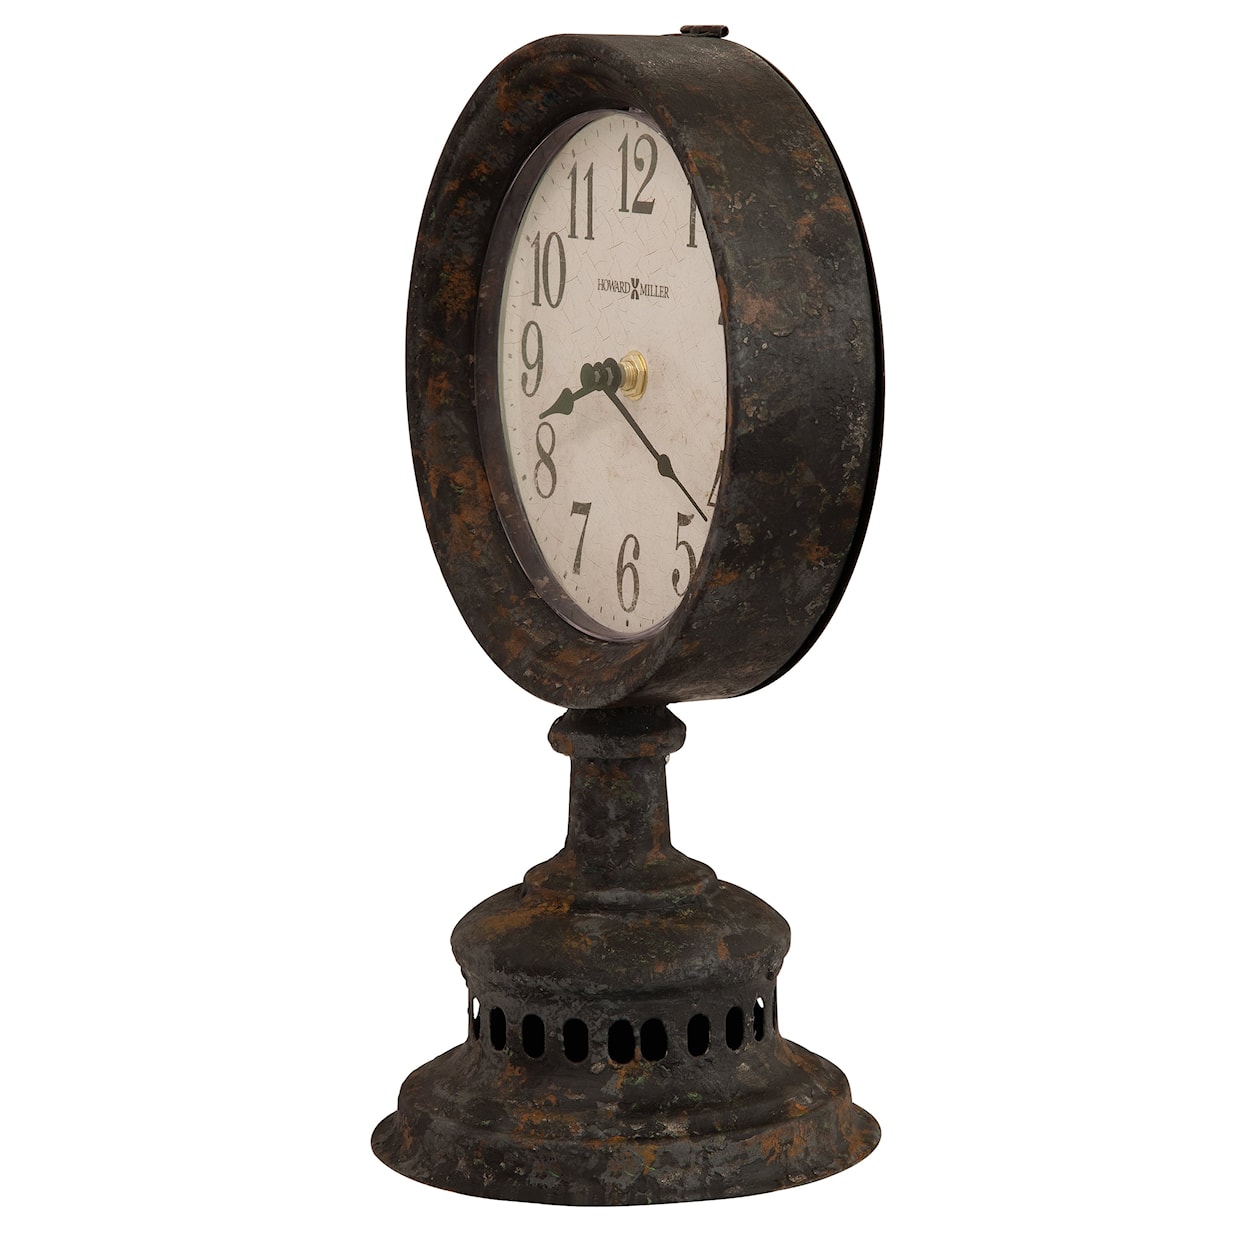 Howard Miller Howard Miller Ardie Mantel Clock